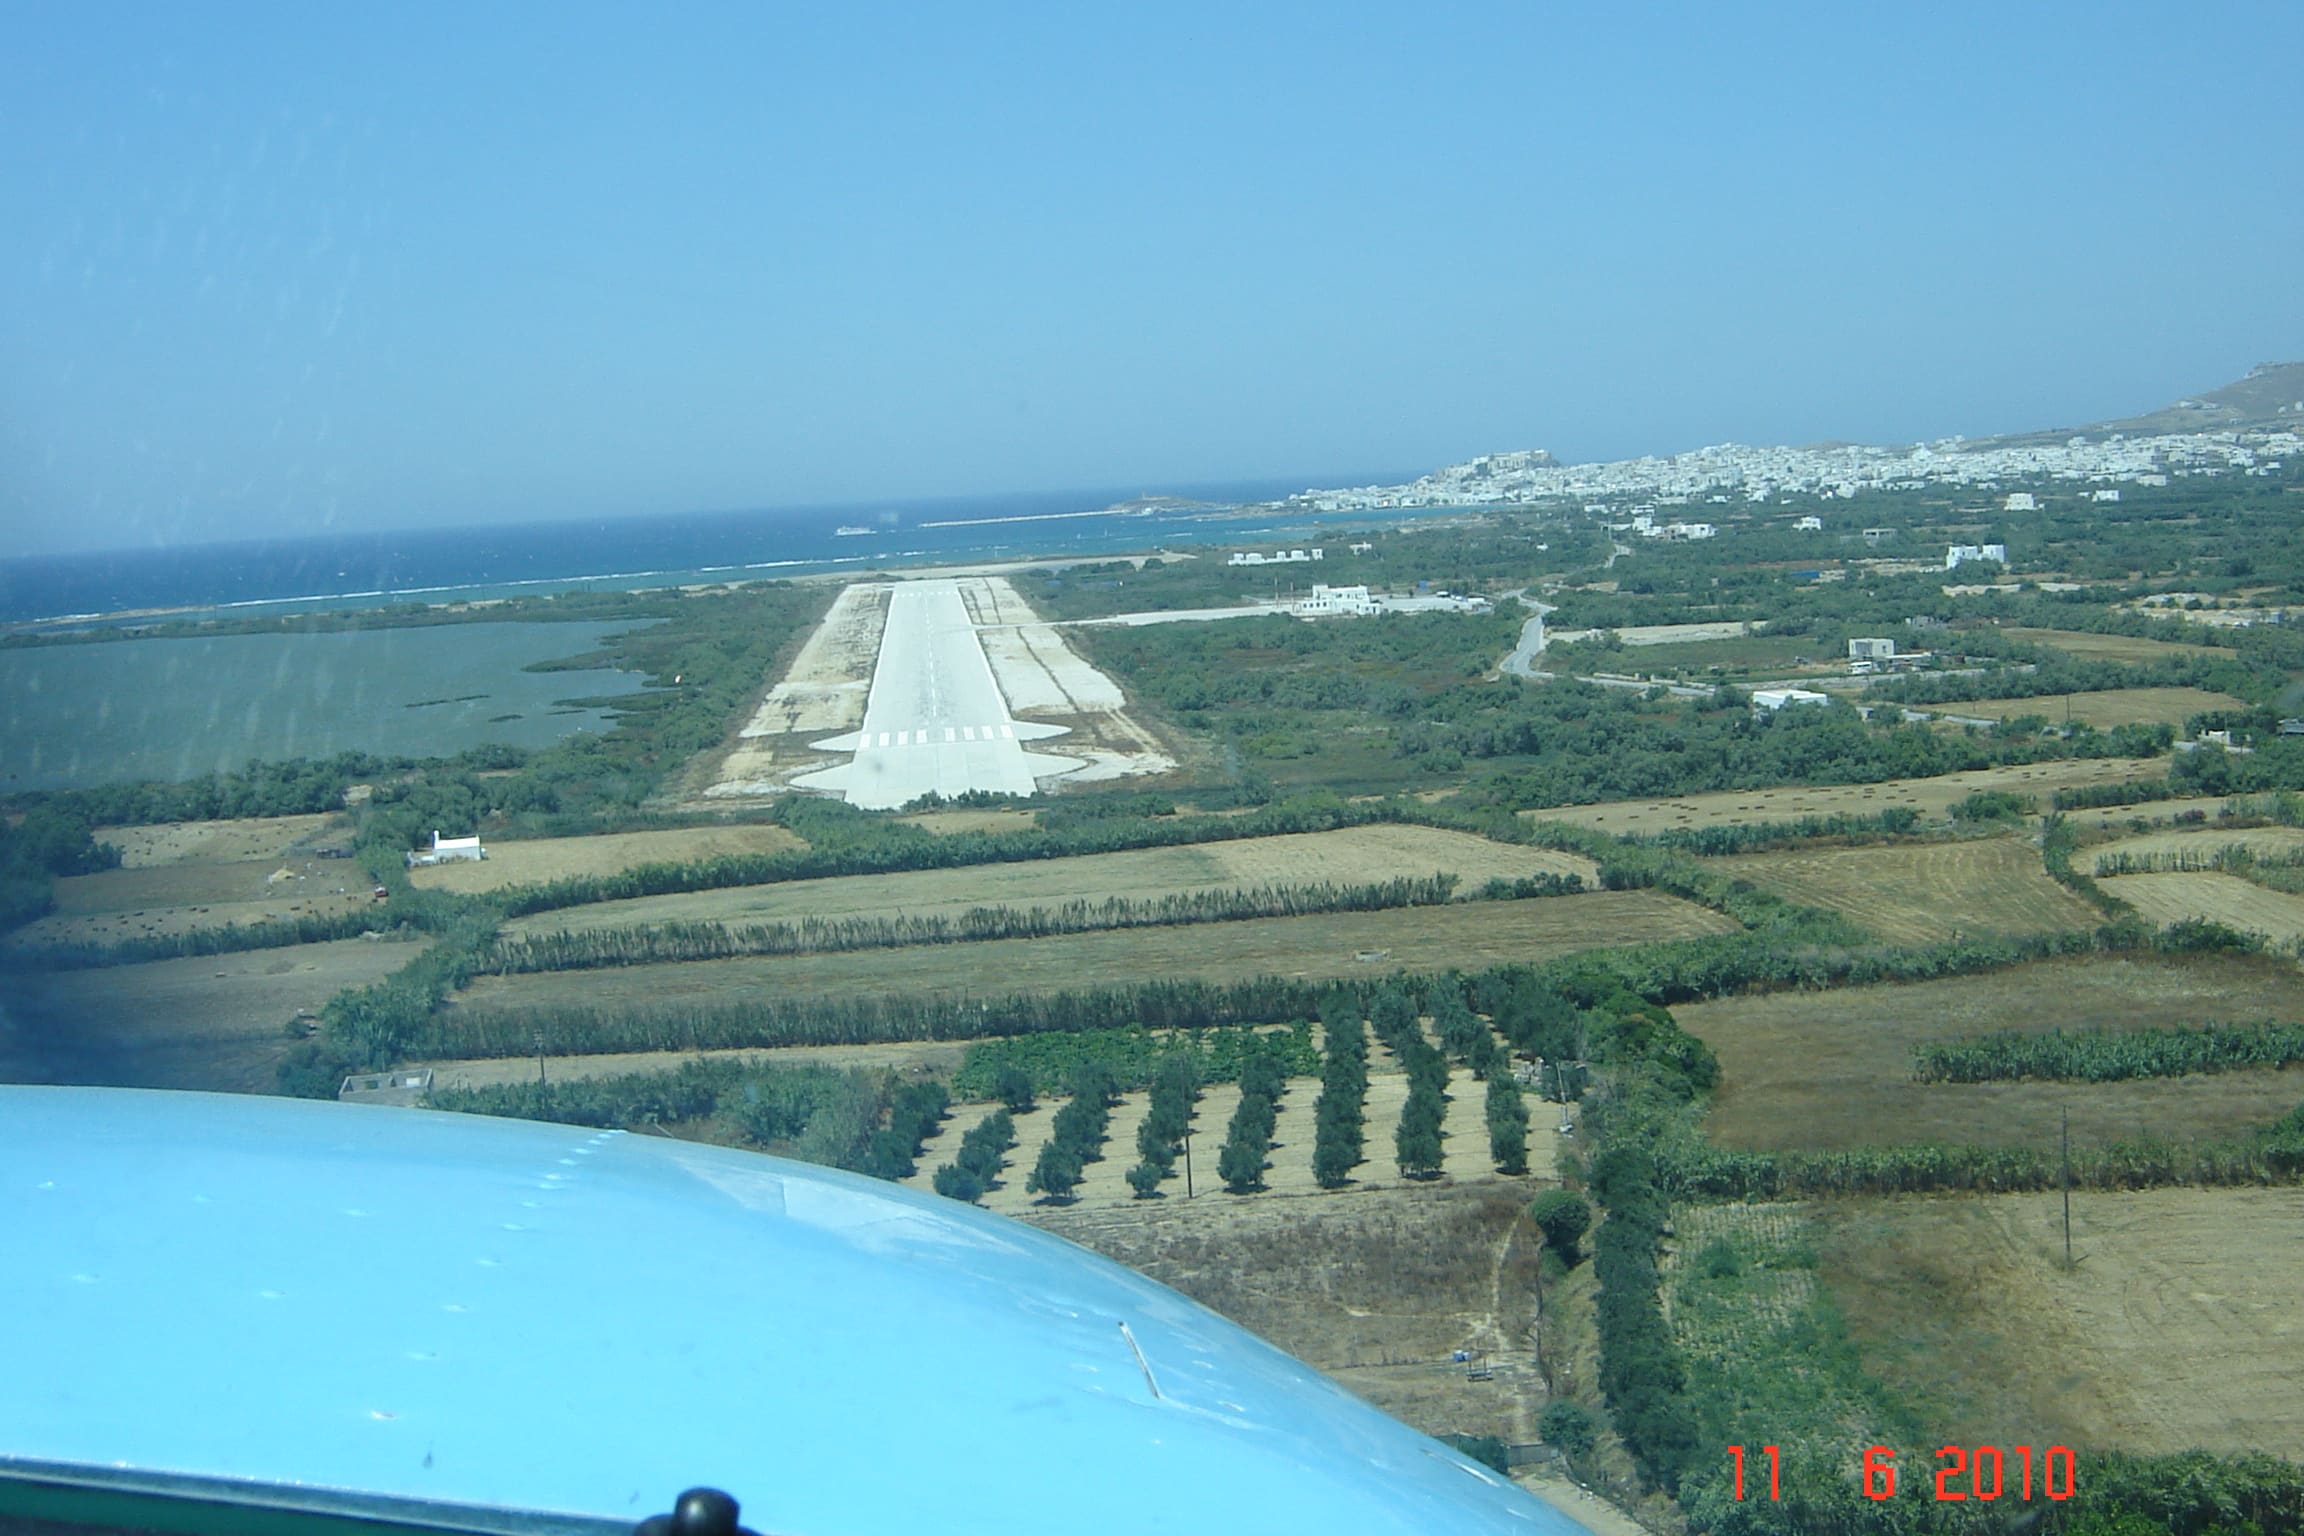 Φάκελος "Αεροδρόμιο Νάξου": Στην "Εντατική" του Εφετείου Αιγαίου, λόγω κορωνοϊού, οι απαλλοτριώσεις για την επιμήκυνση του διαδρόμου...